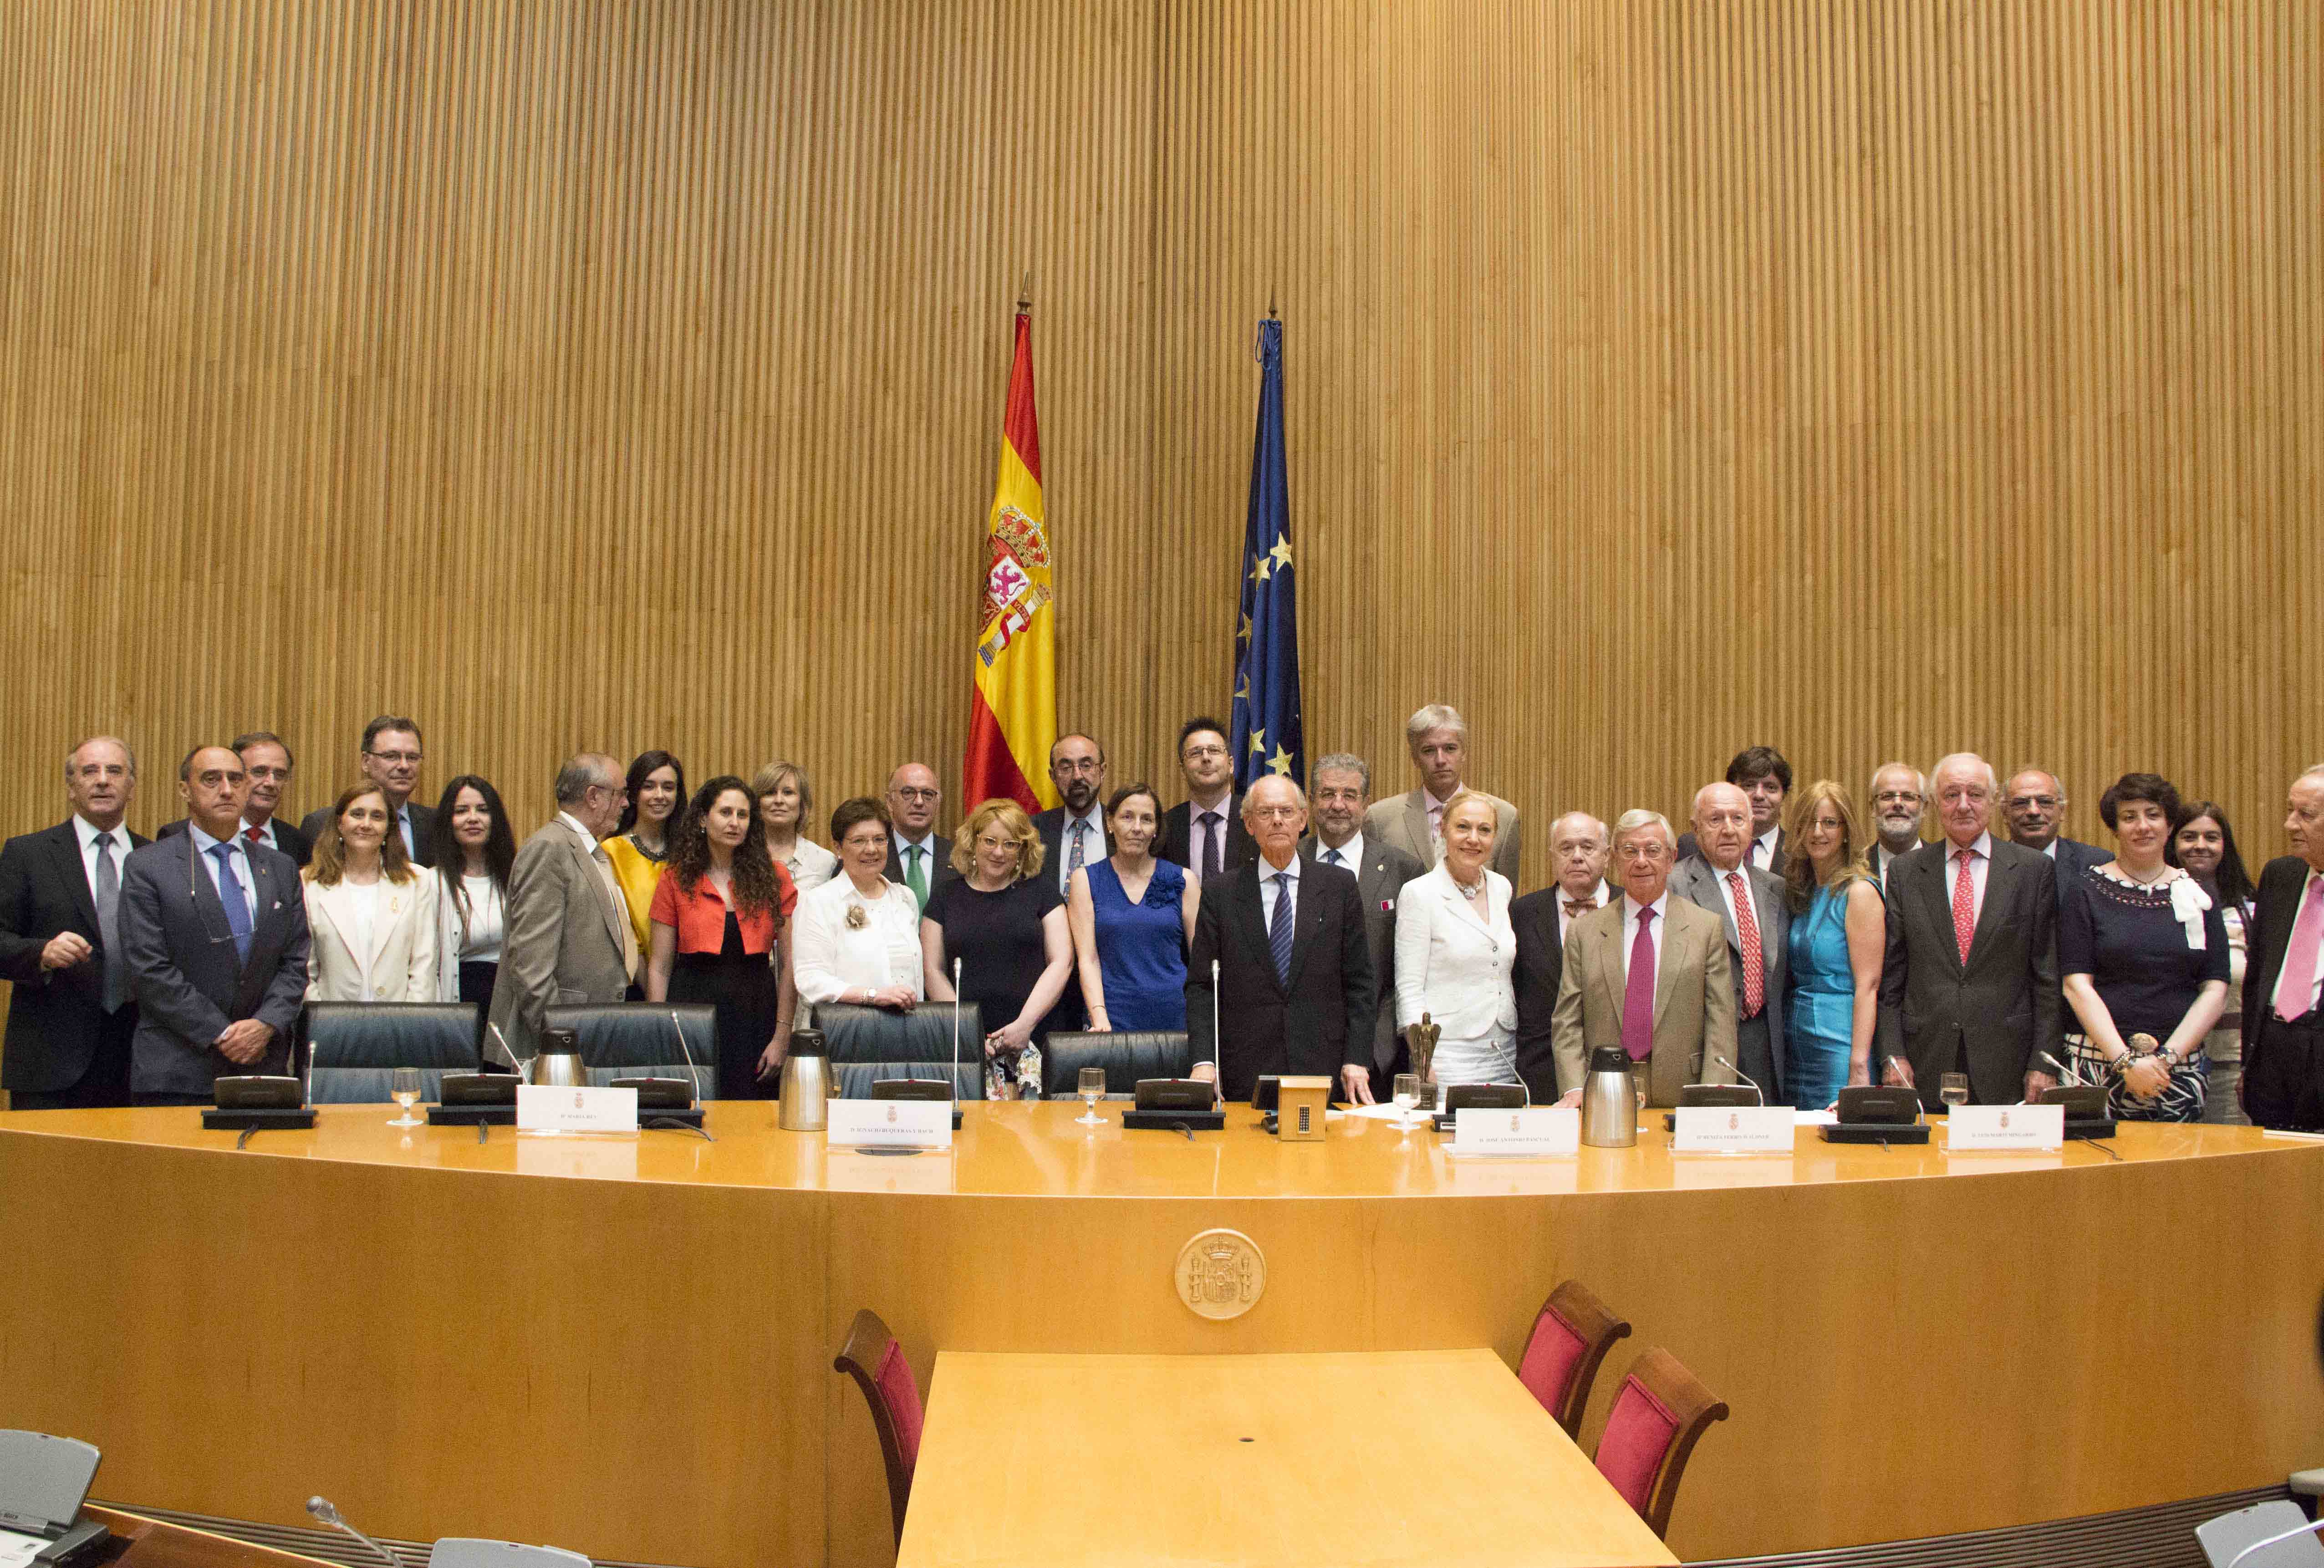 Representantes políticos, culturales y empresariales, juntos en el Homenaje Universal al Idioma Español